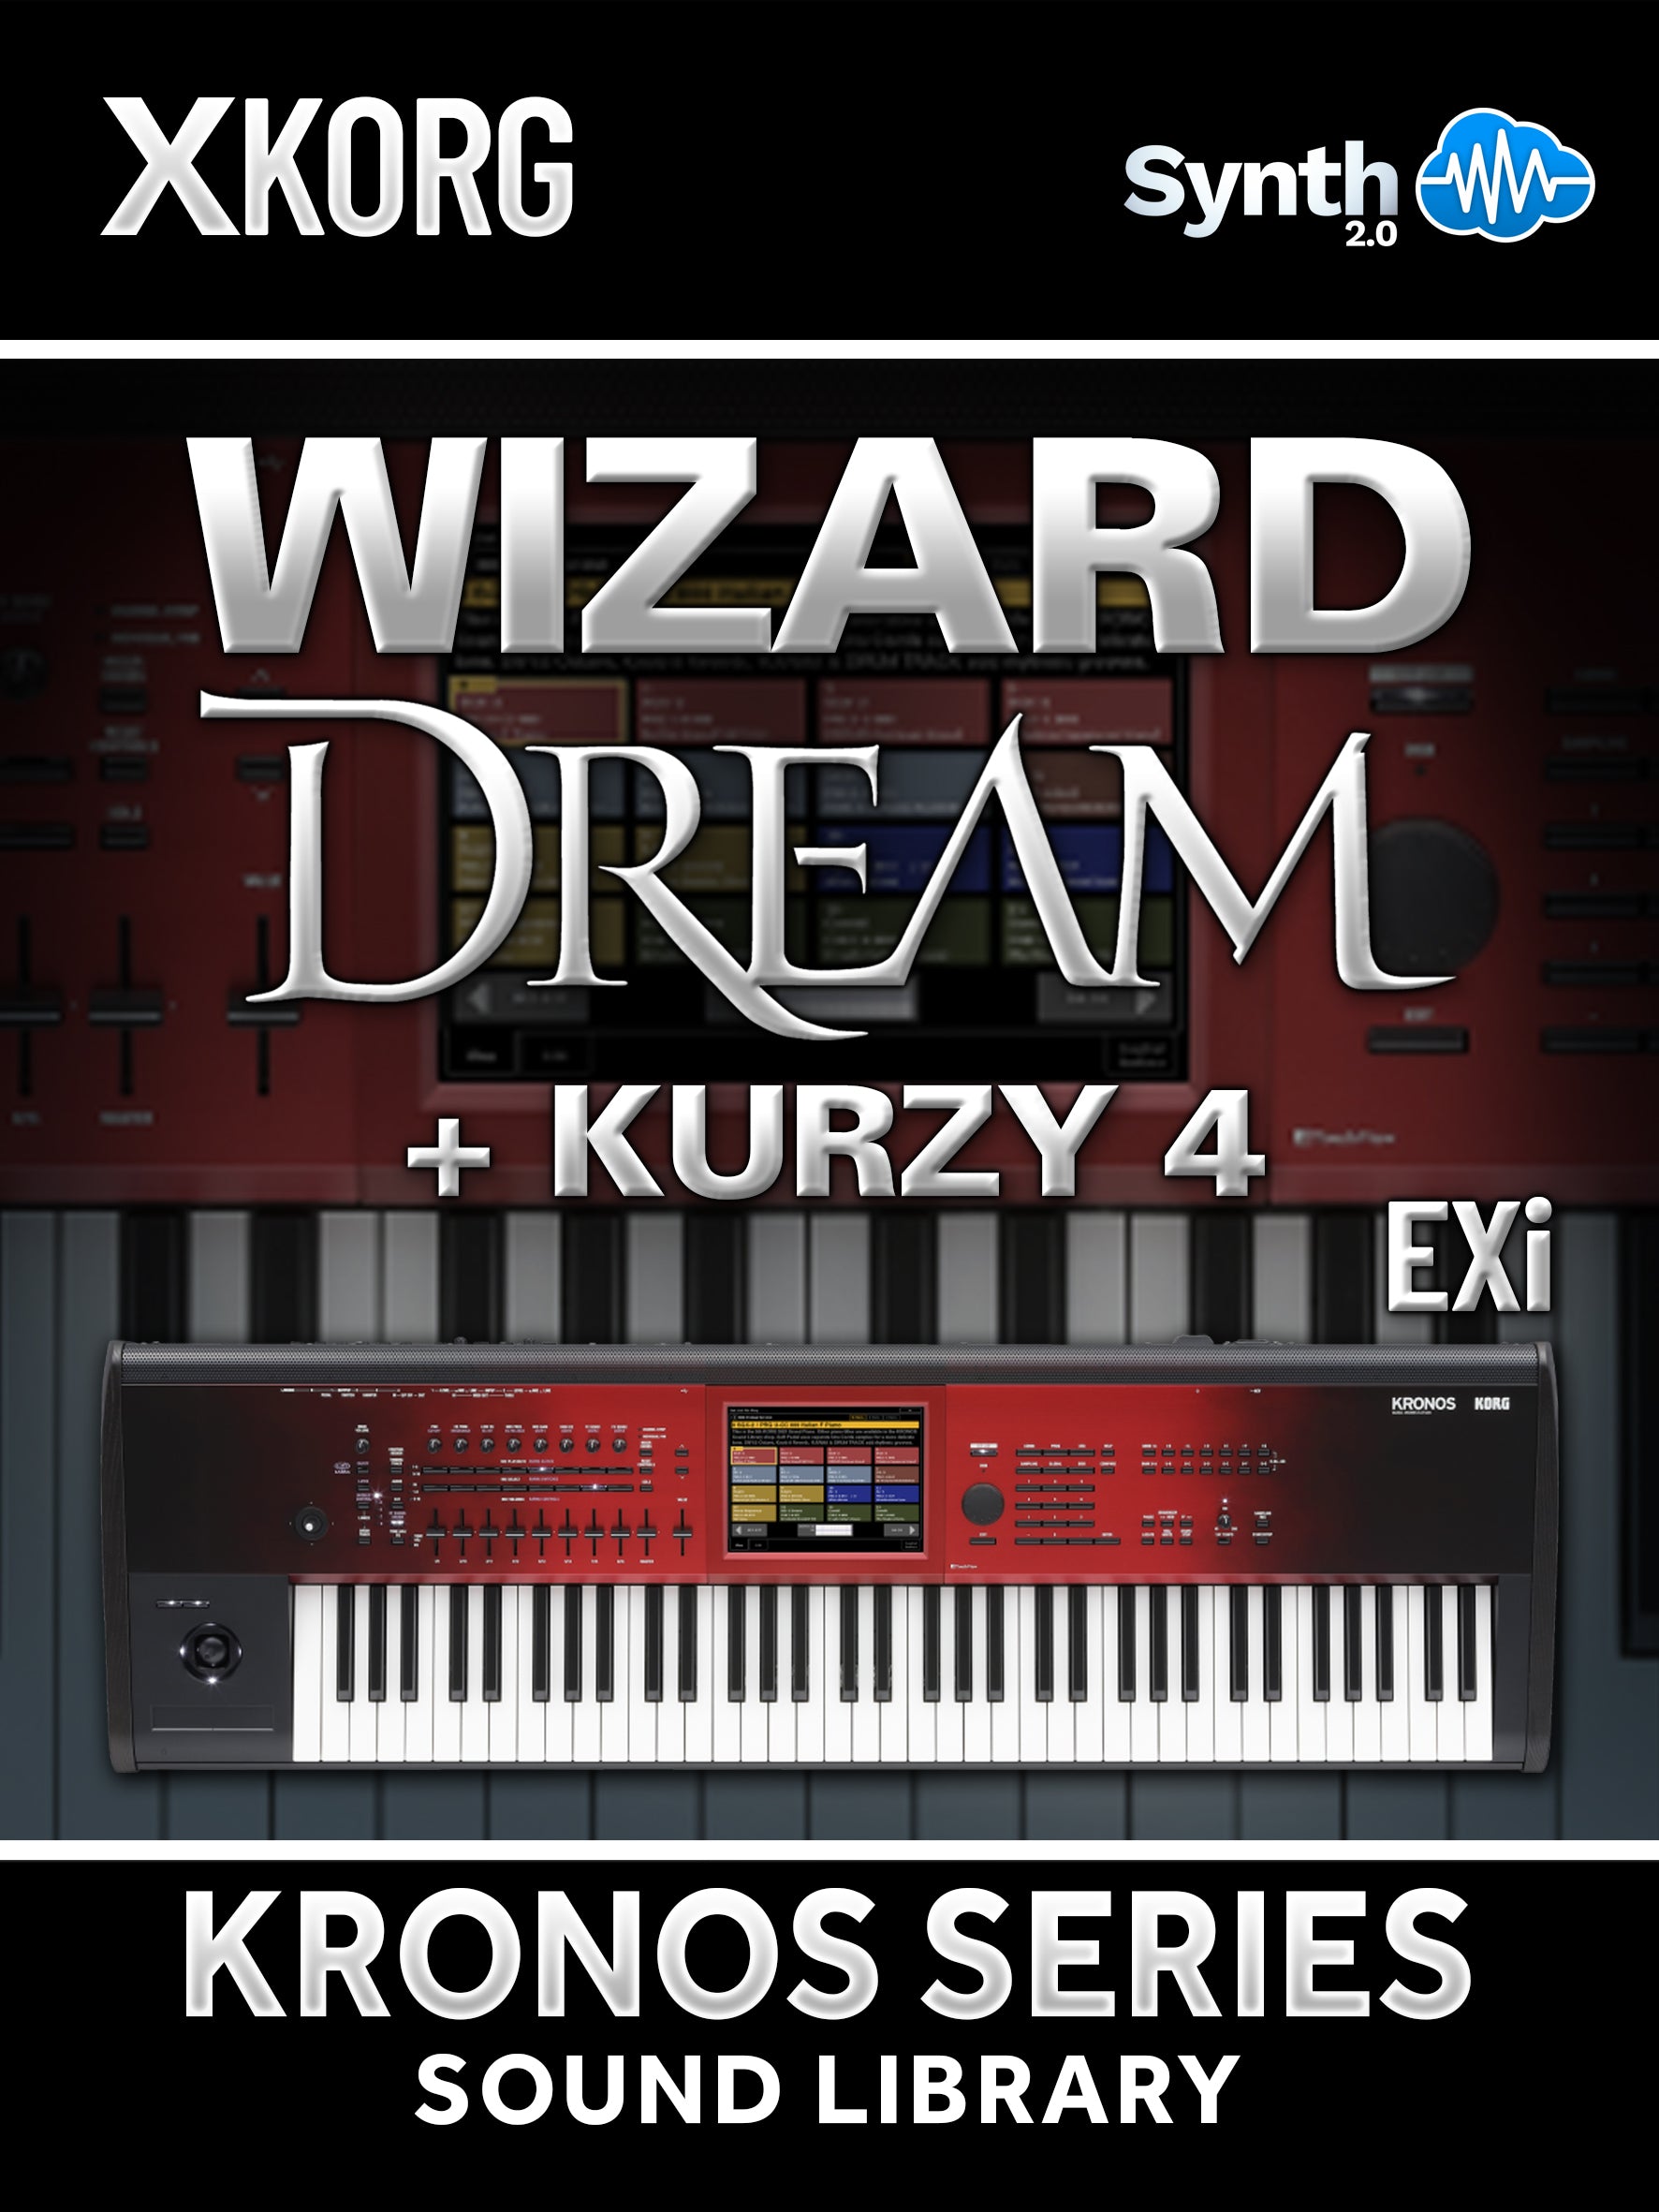 SSX117 - ( Bundle ) - Wizard Dream EXi + Kurzy 4 + Sfam Full Cover V2 + JR Bonus - Korg Kronos